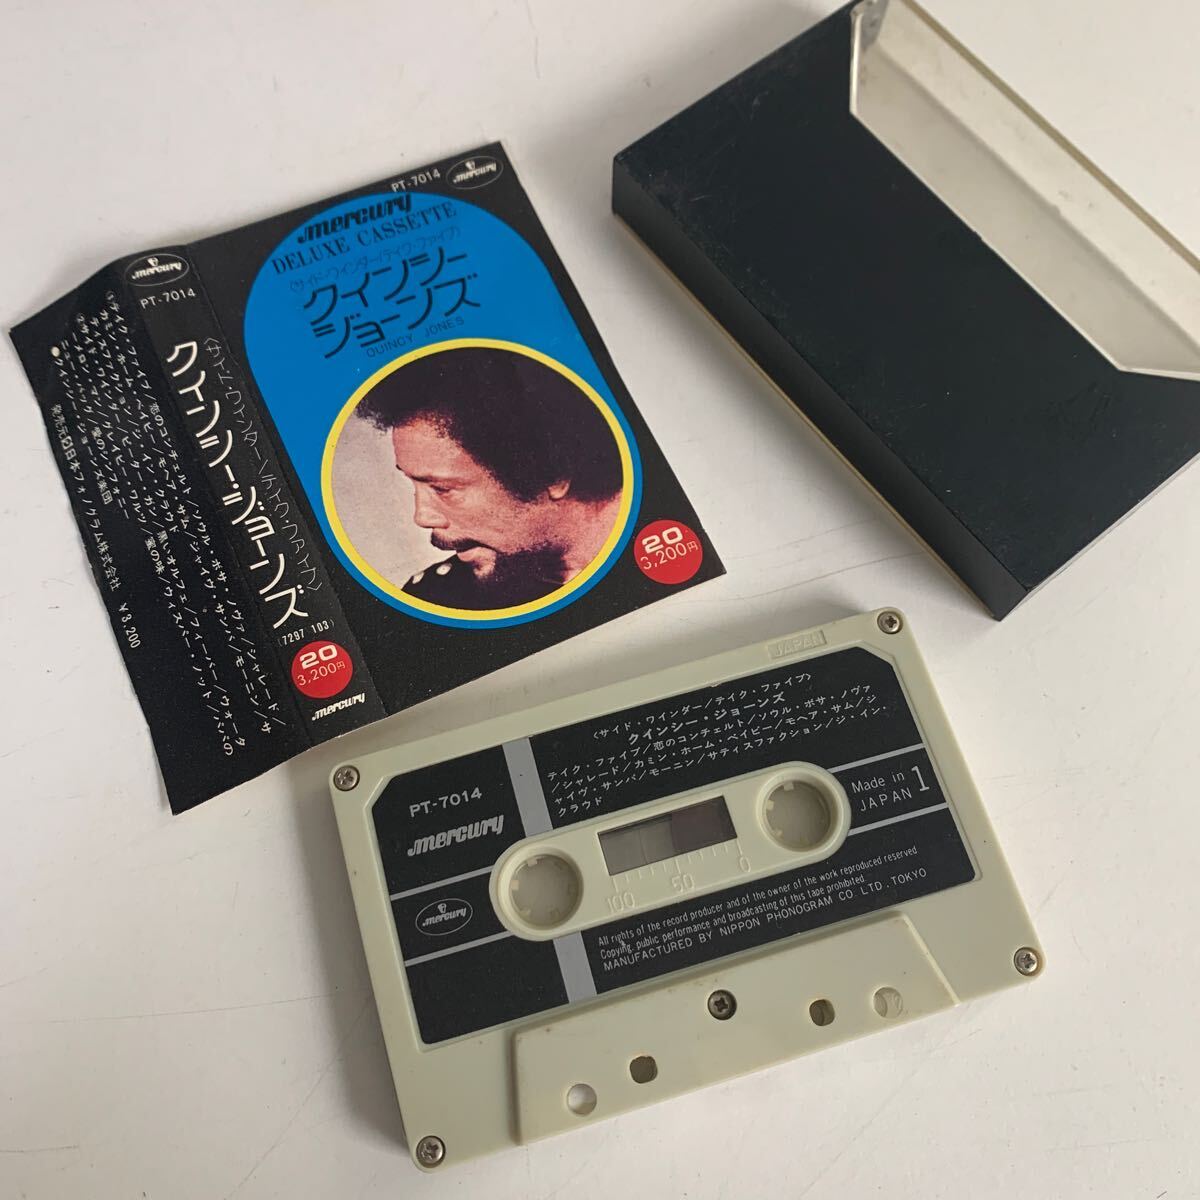 QUINCY JONES ...  кассета  лента    Япония  план   издание  20 мелодия  входит   жилет   товар в состоянии "как есть" 